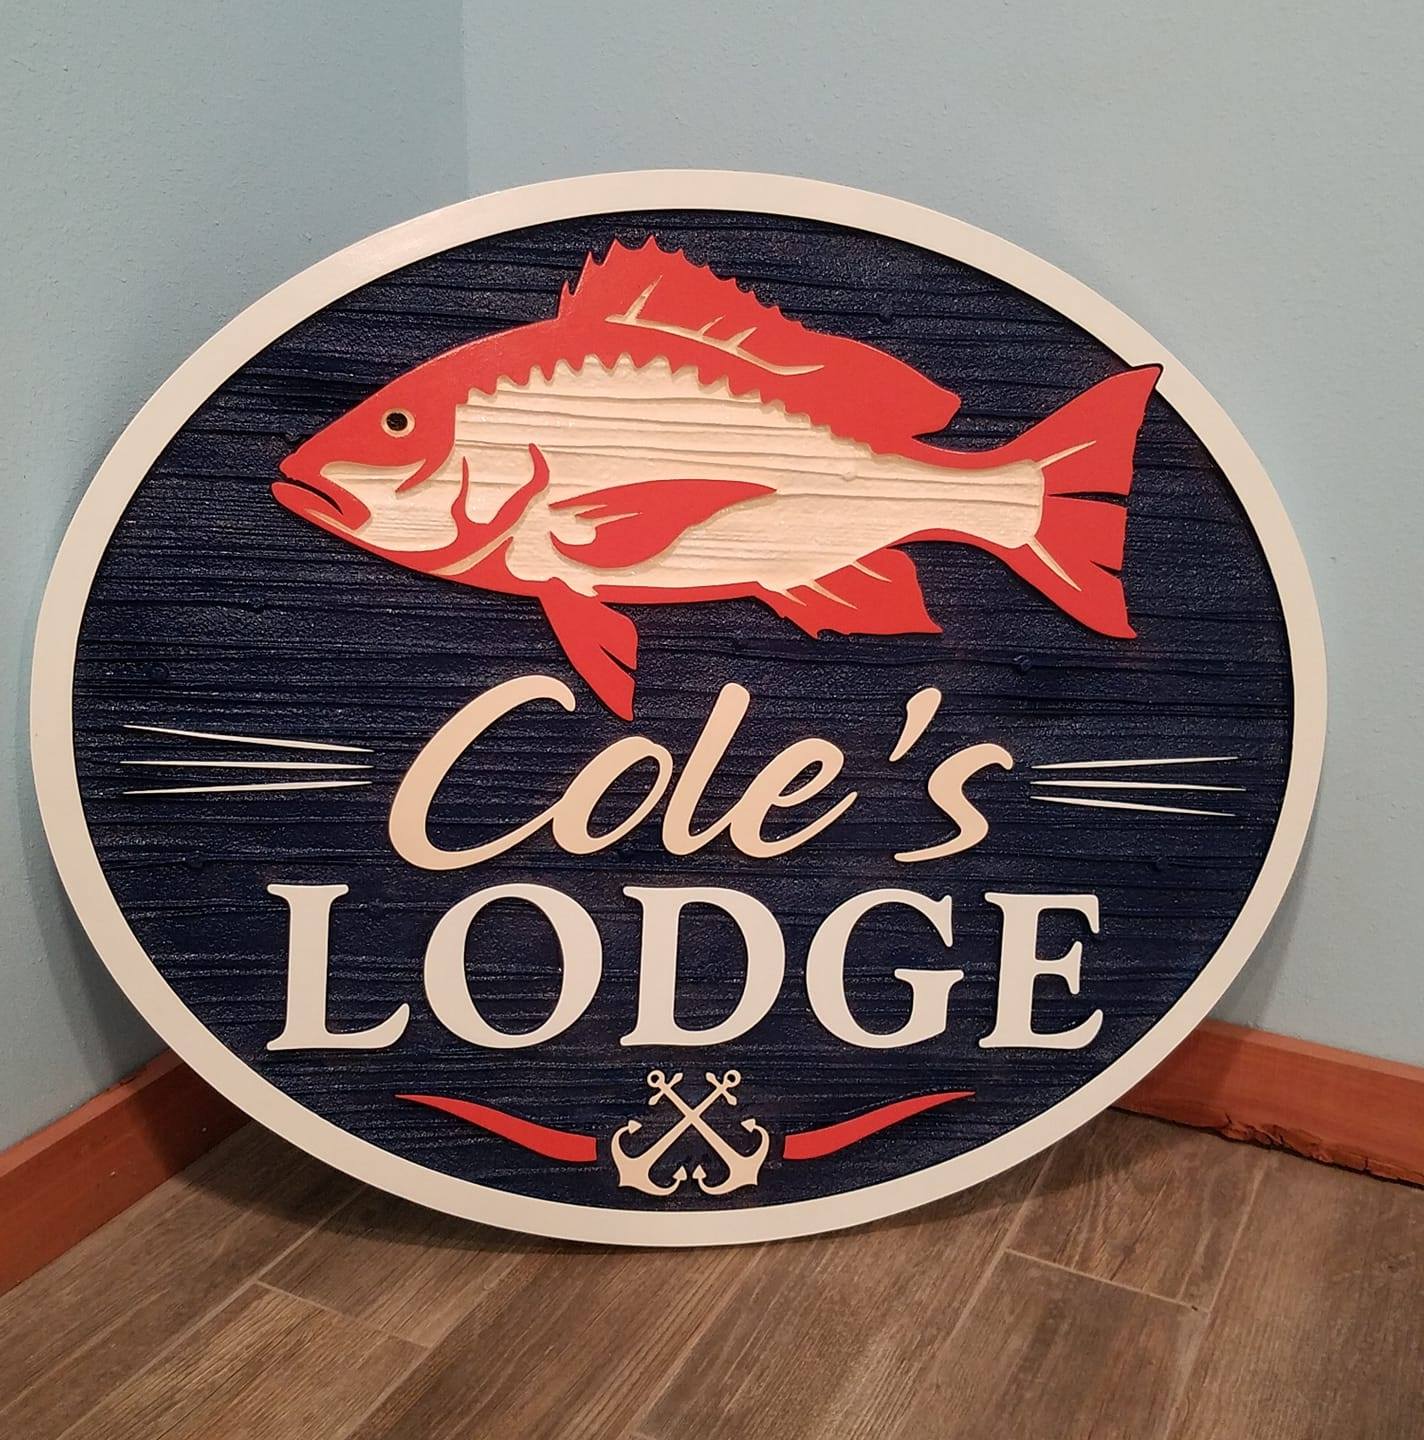 Cole’s Lodge